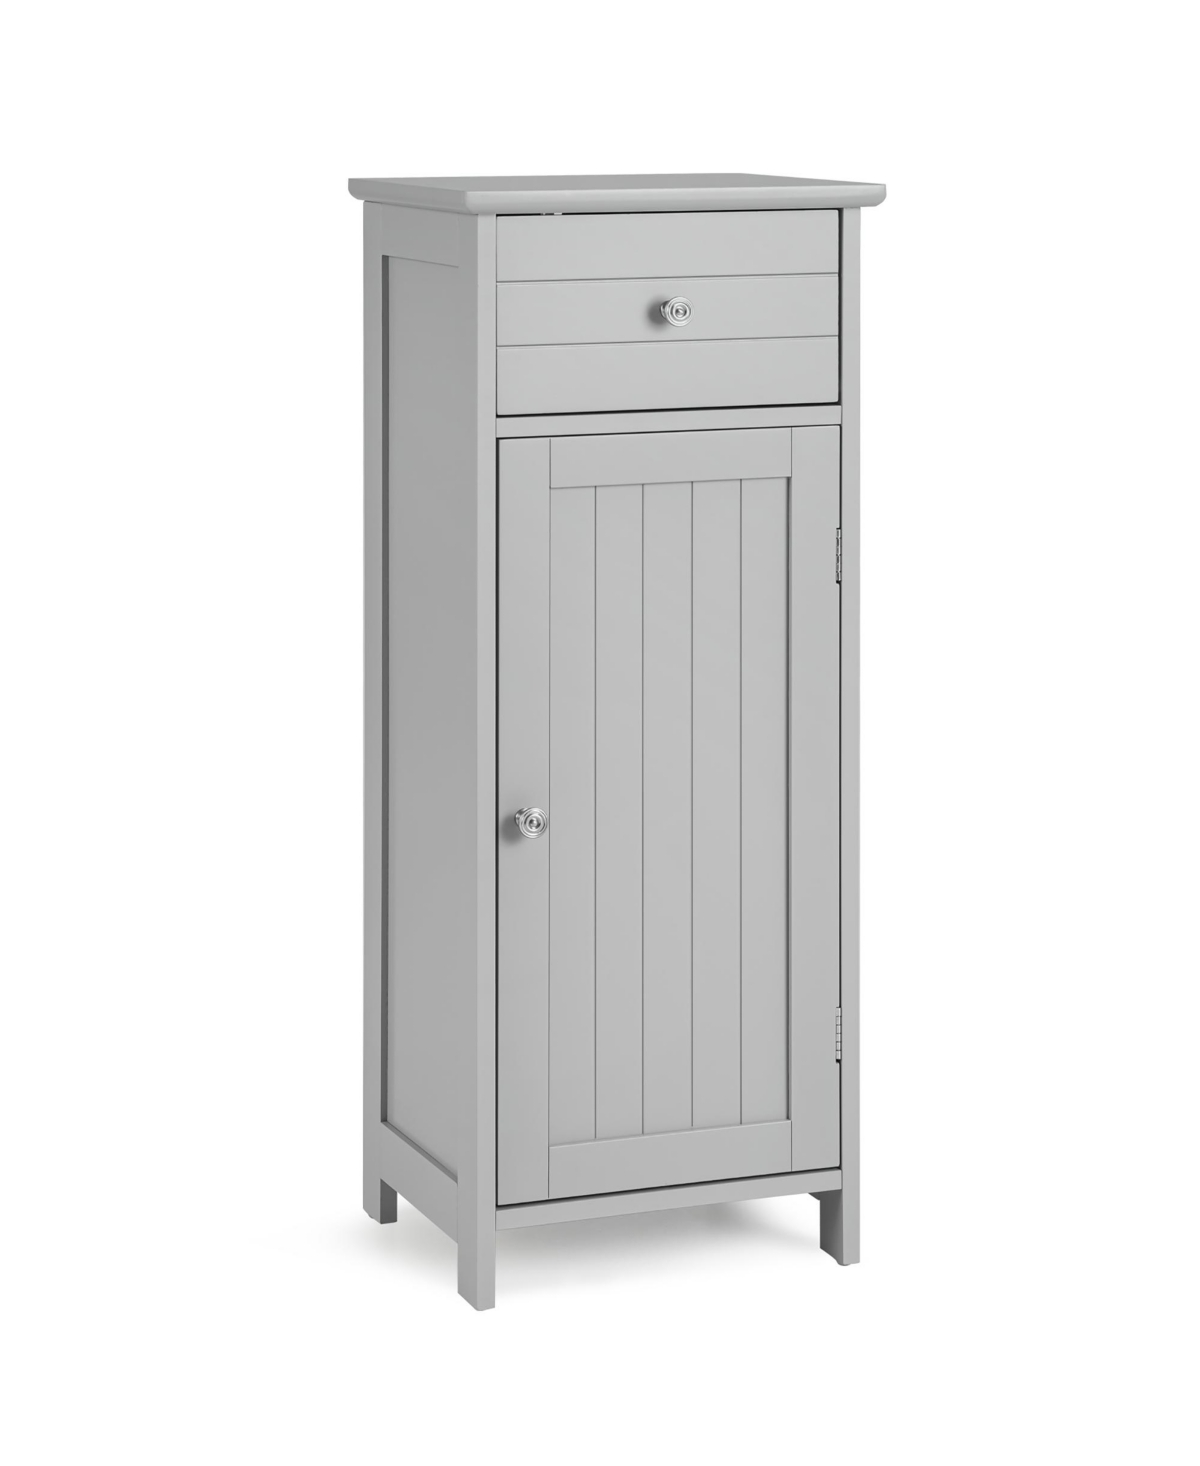 Wooden Bathroom Floor Storage Cabinet Organizer w/ Drawer Adjustable Shelf - Grey